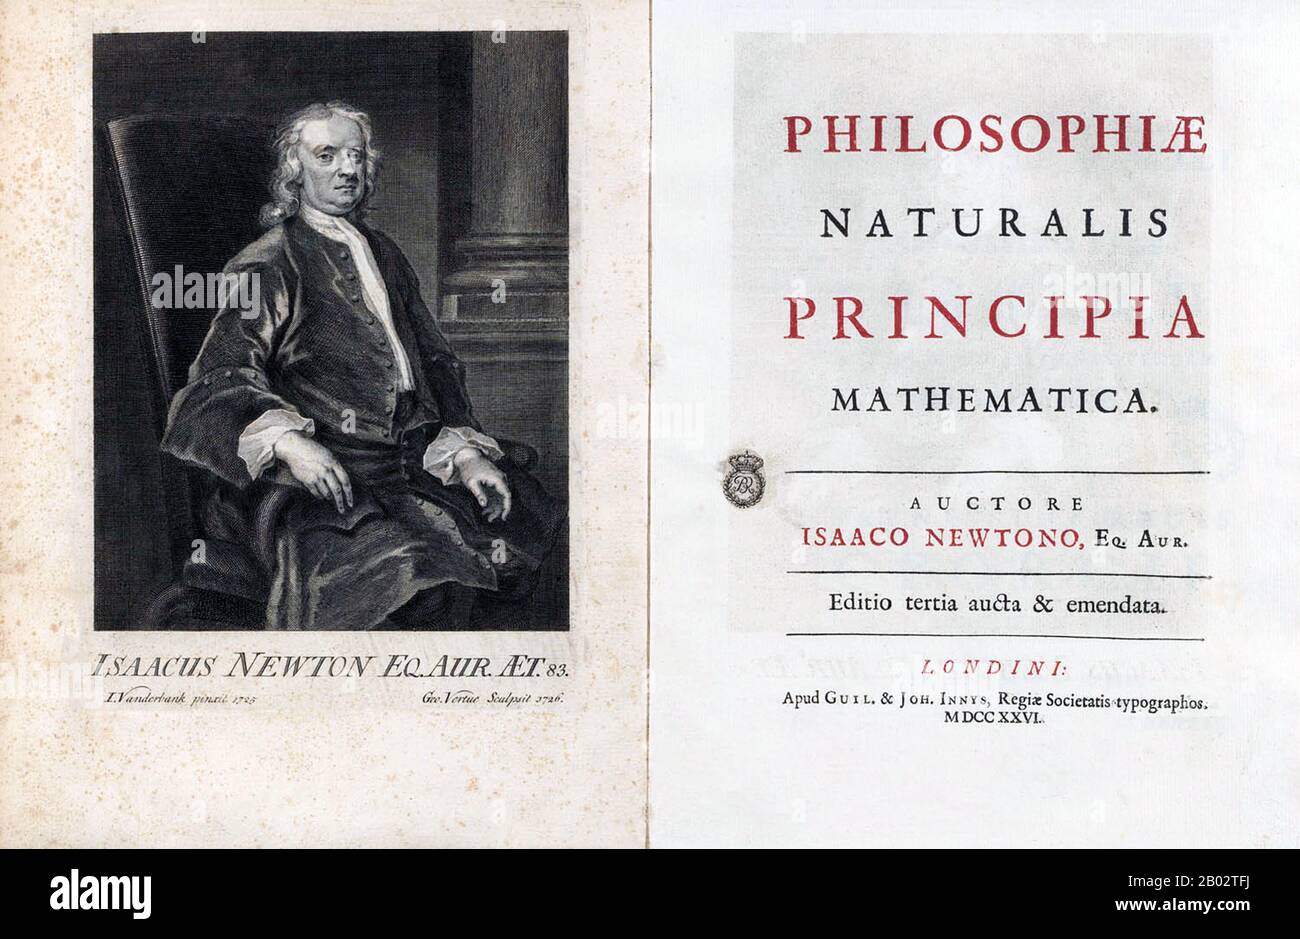 Philosophiae Naturalis Principia Mathematica, lat. Für 'Mathematische Prinzipien der Naturphilosophie', oft auch nur als Principia bezeichnet, ist ein Werk in drei Büchern von Sir Isaac Newton in lateinischer Sprache, das erstmals am 5. Juli 1687 veröffentlicht wurde. Nachdem er seine persönliche Kopie der ersten Ausgabe kommentiert und korrigiert hatte, veröffentlichte Newton auch zwei weitere Ausgaben, 1713 und 1726. Die Principia gibt Newtons Bewegungsgesetze an, bilden die Grundlage der klassischen Mechanik, auch Newtons Gesetz der universellen Gravitation und eine Ableitung von Keplers Gesetzen der Planetenbewegung (die Kepler erstmals empirisch erhielt). Stockfoto